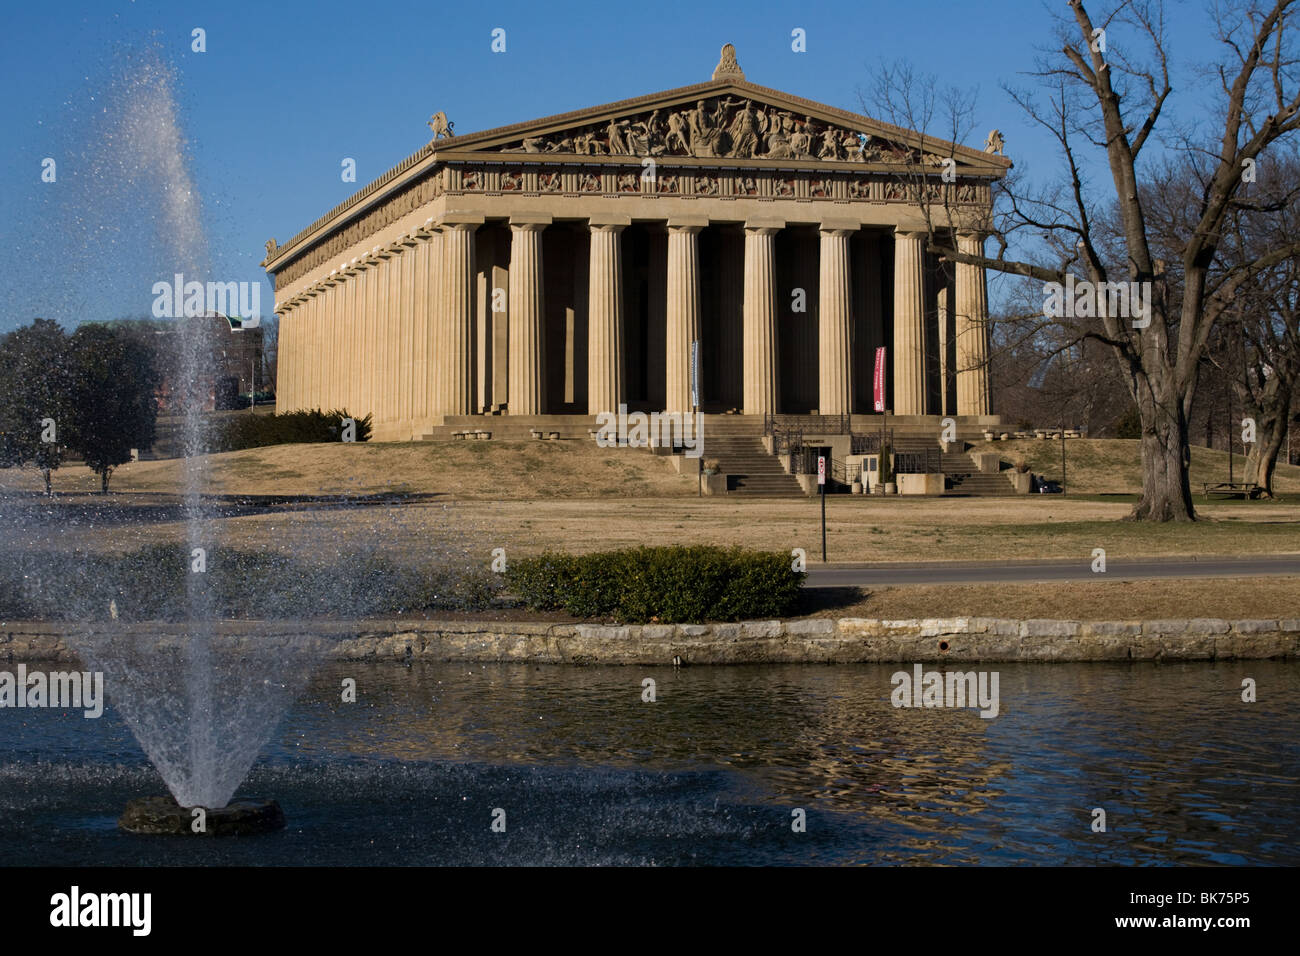 Parthenon replica in Nashville, Tennessee Stock Photo